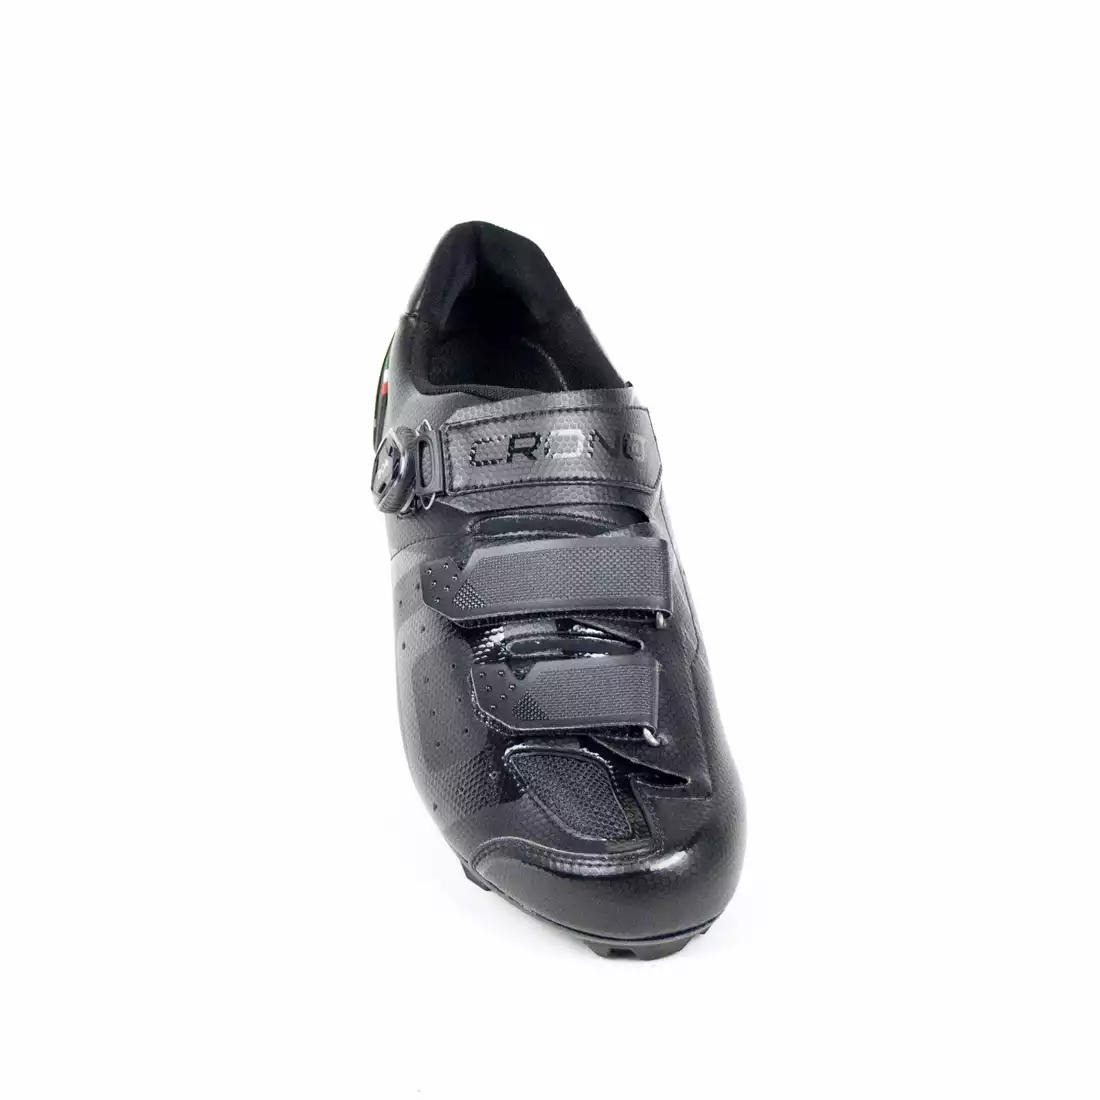 CRONO CX-3-22 Kerékpáros cipő MTB, kompozit, fekete